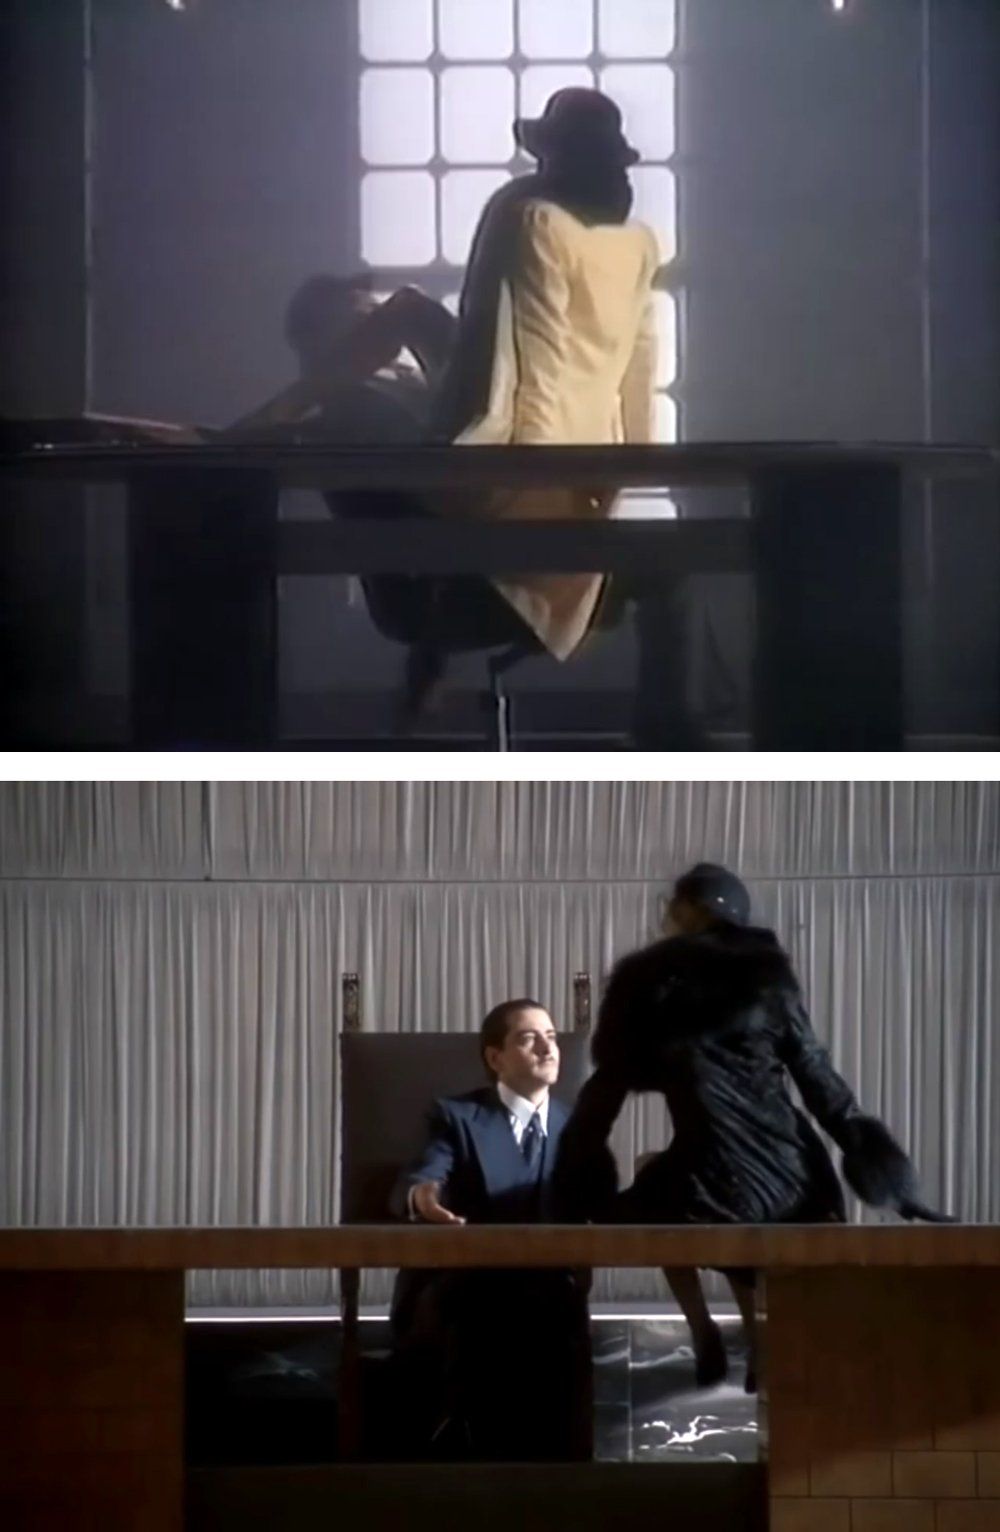 Comparison of Barbra's video with scene from Bertolucci film.